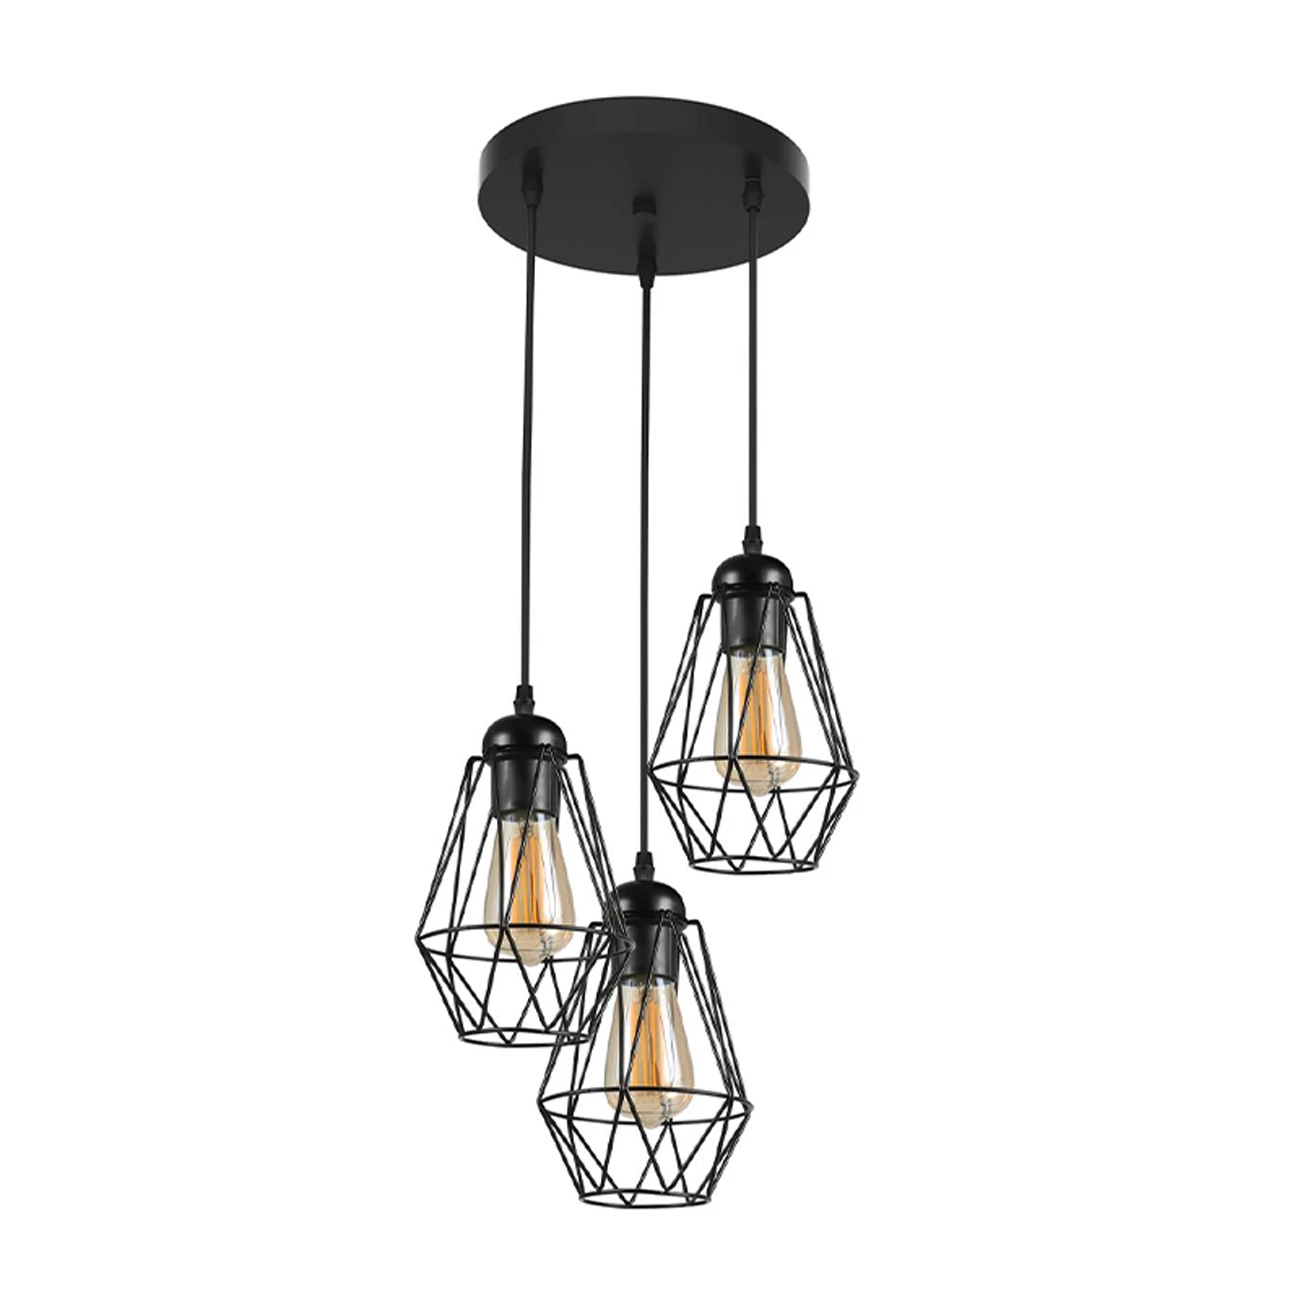 Primitief voorzichtig directory Industriële hanglamp zwart | Incl. dimbare E27 lampen | Greece | LedLoket